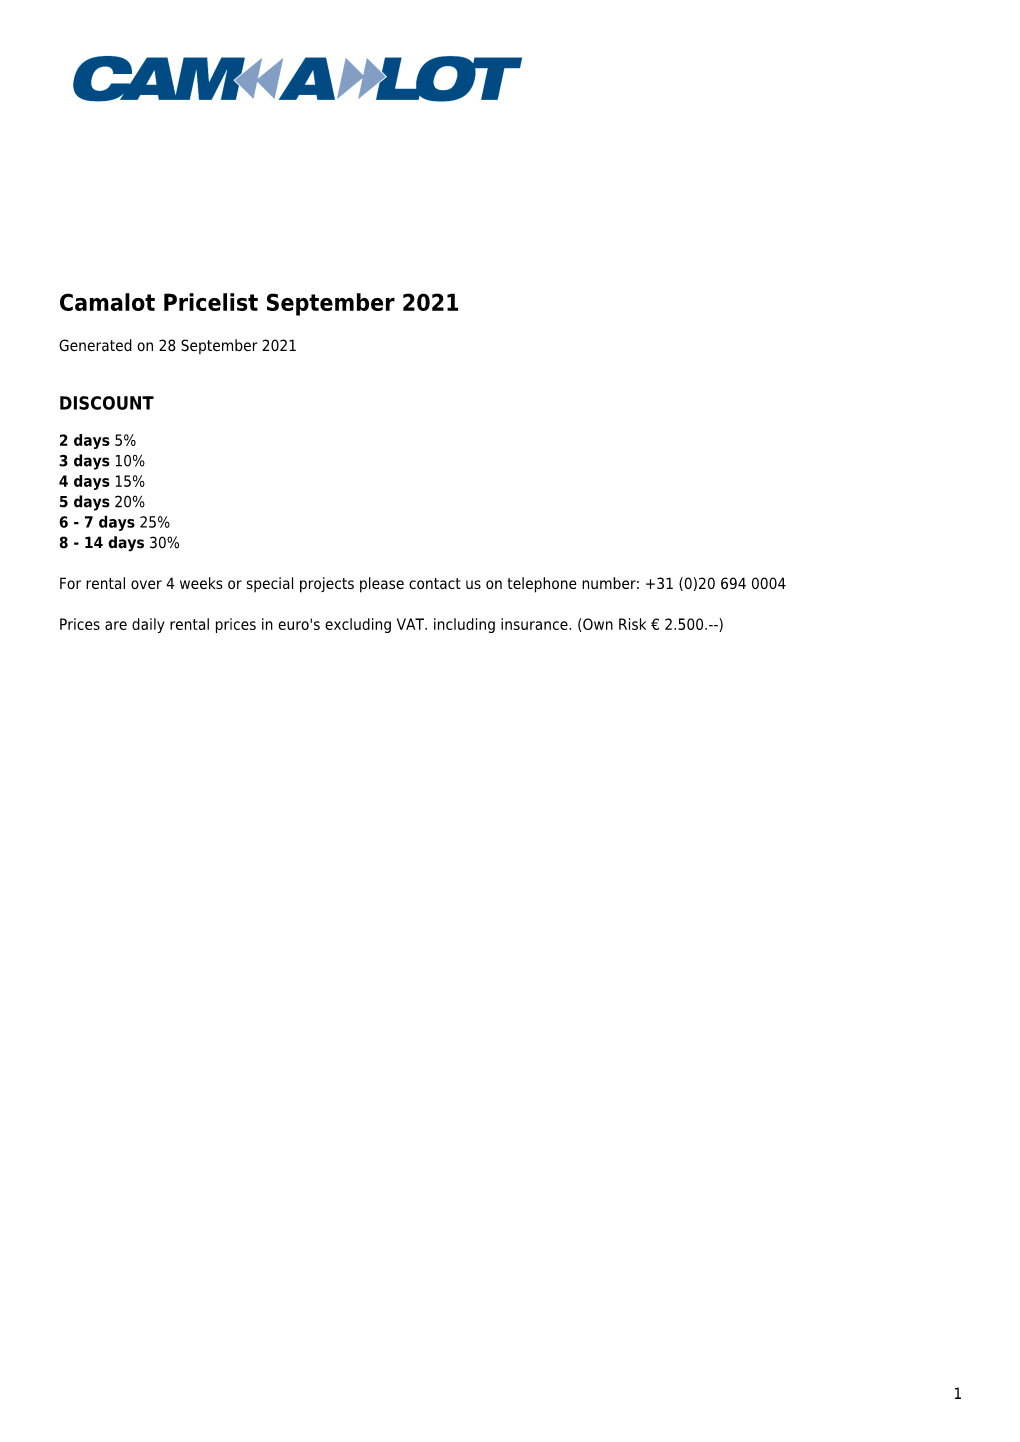 Camalot Pricelist August 2021